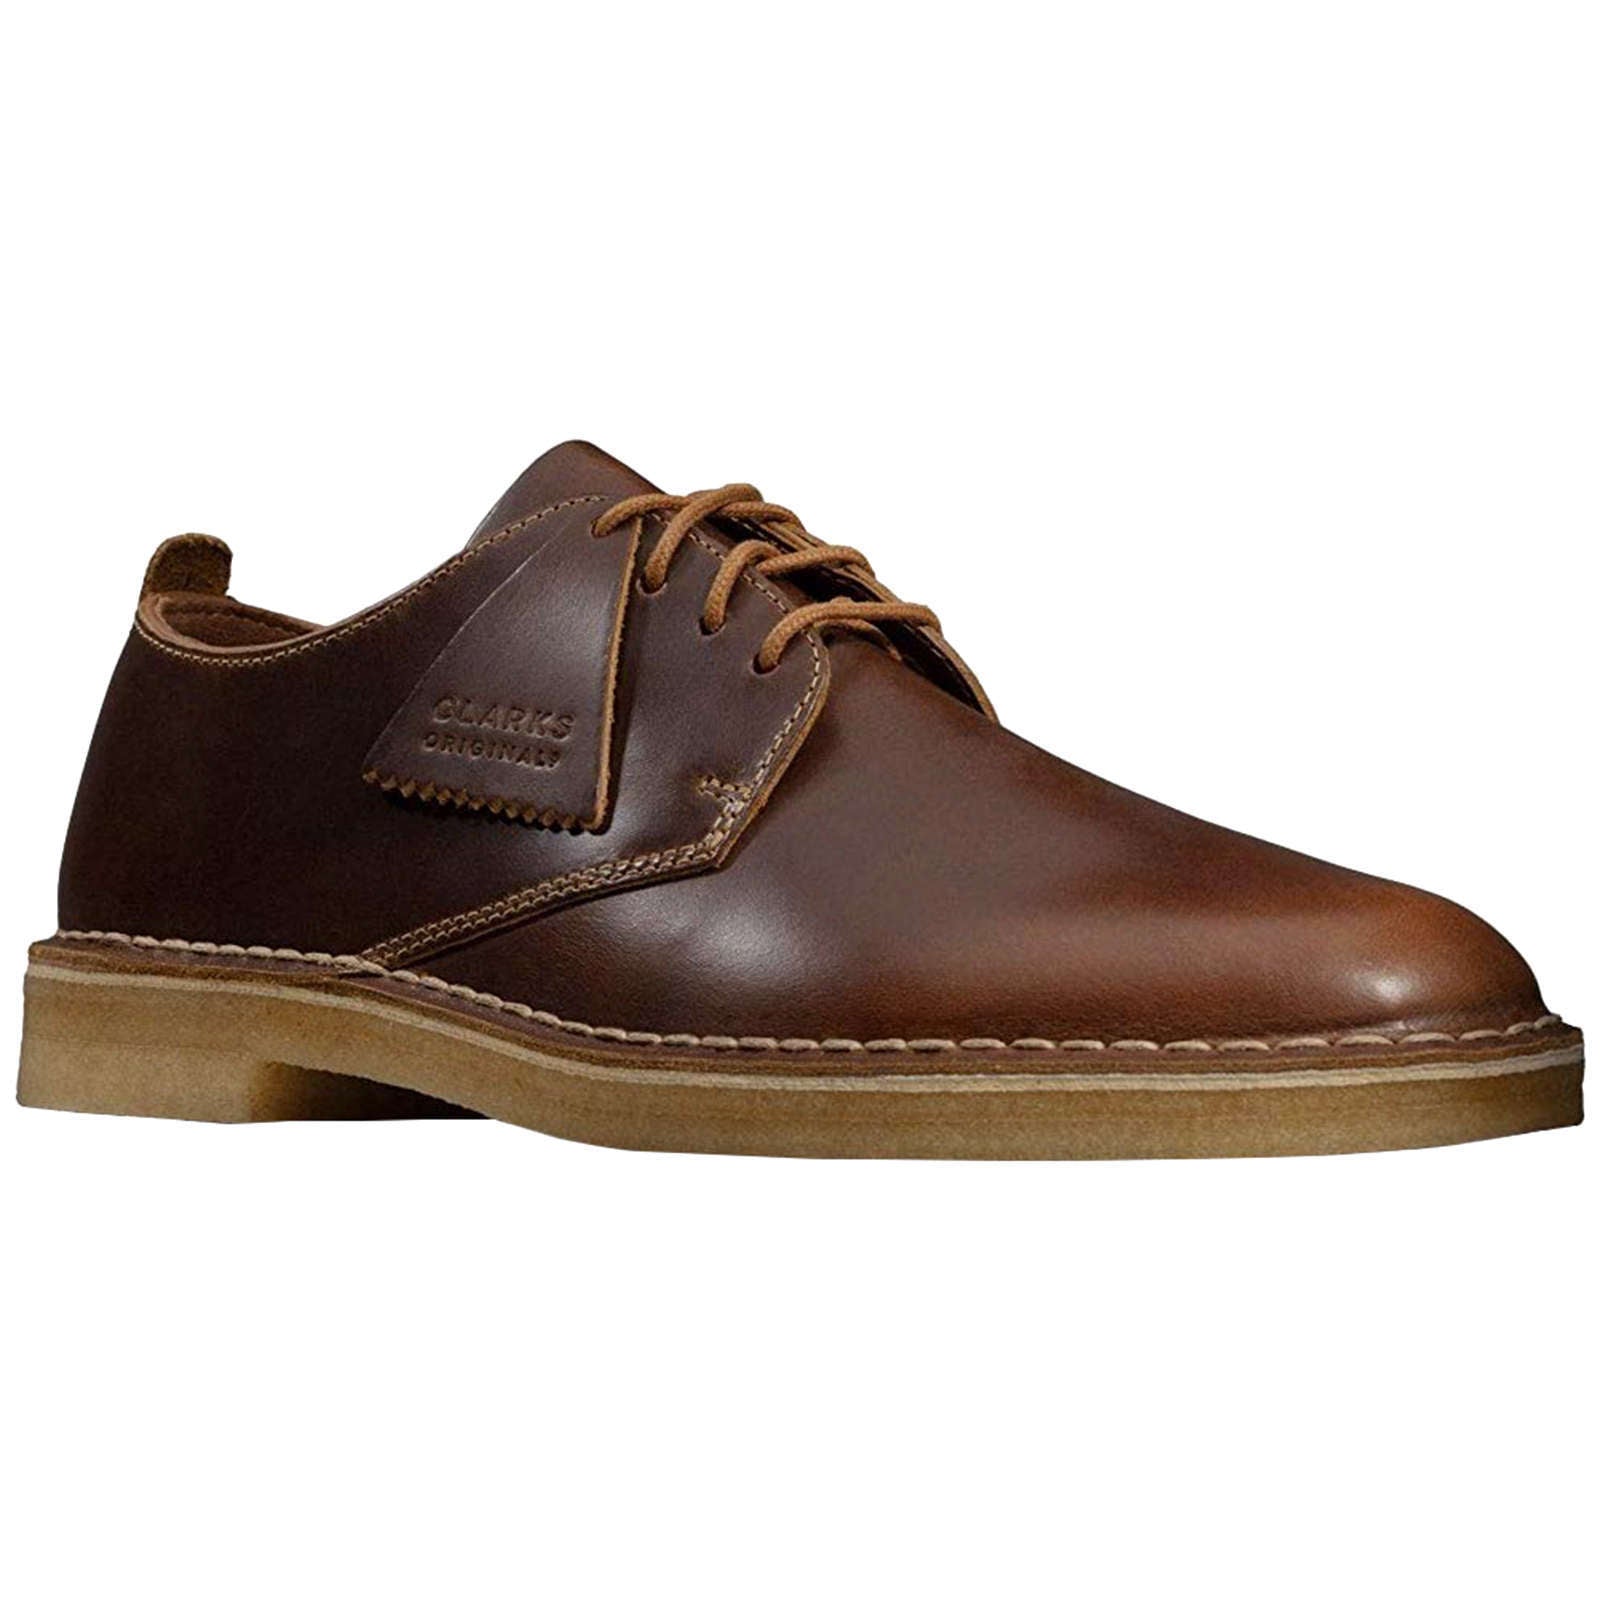 Clarks Originals Desert London Leather Men's Shoes#color_tan